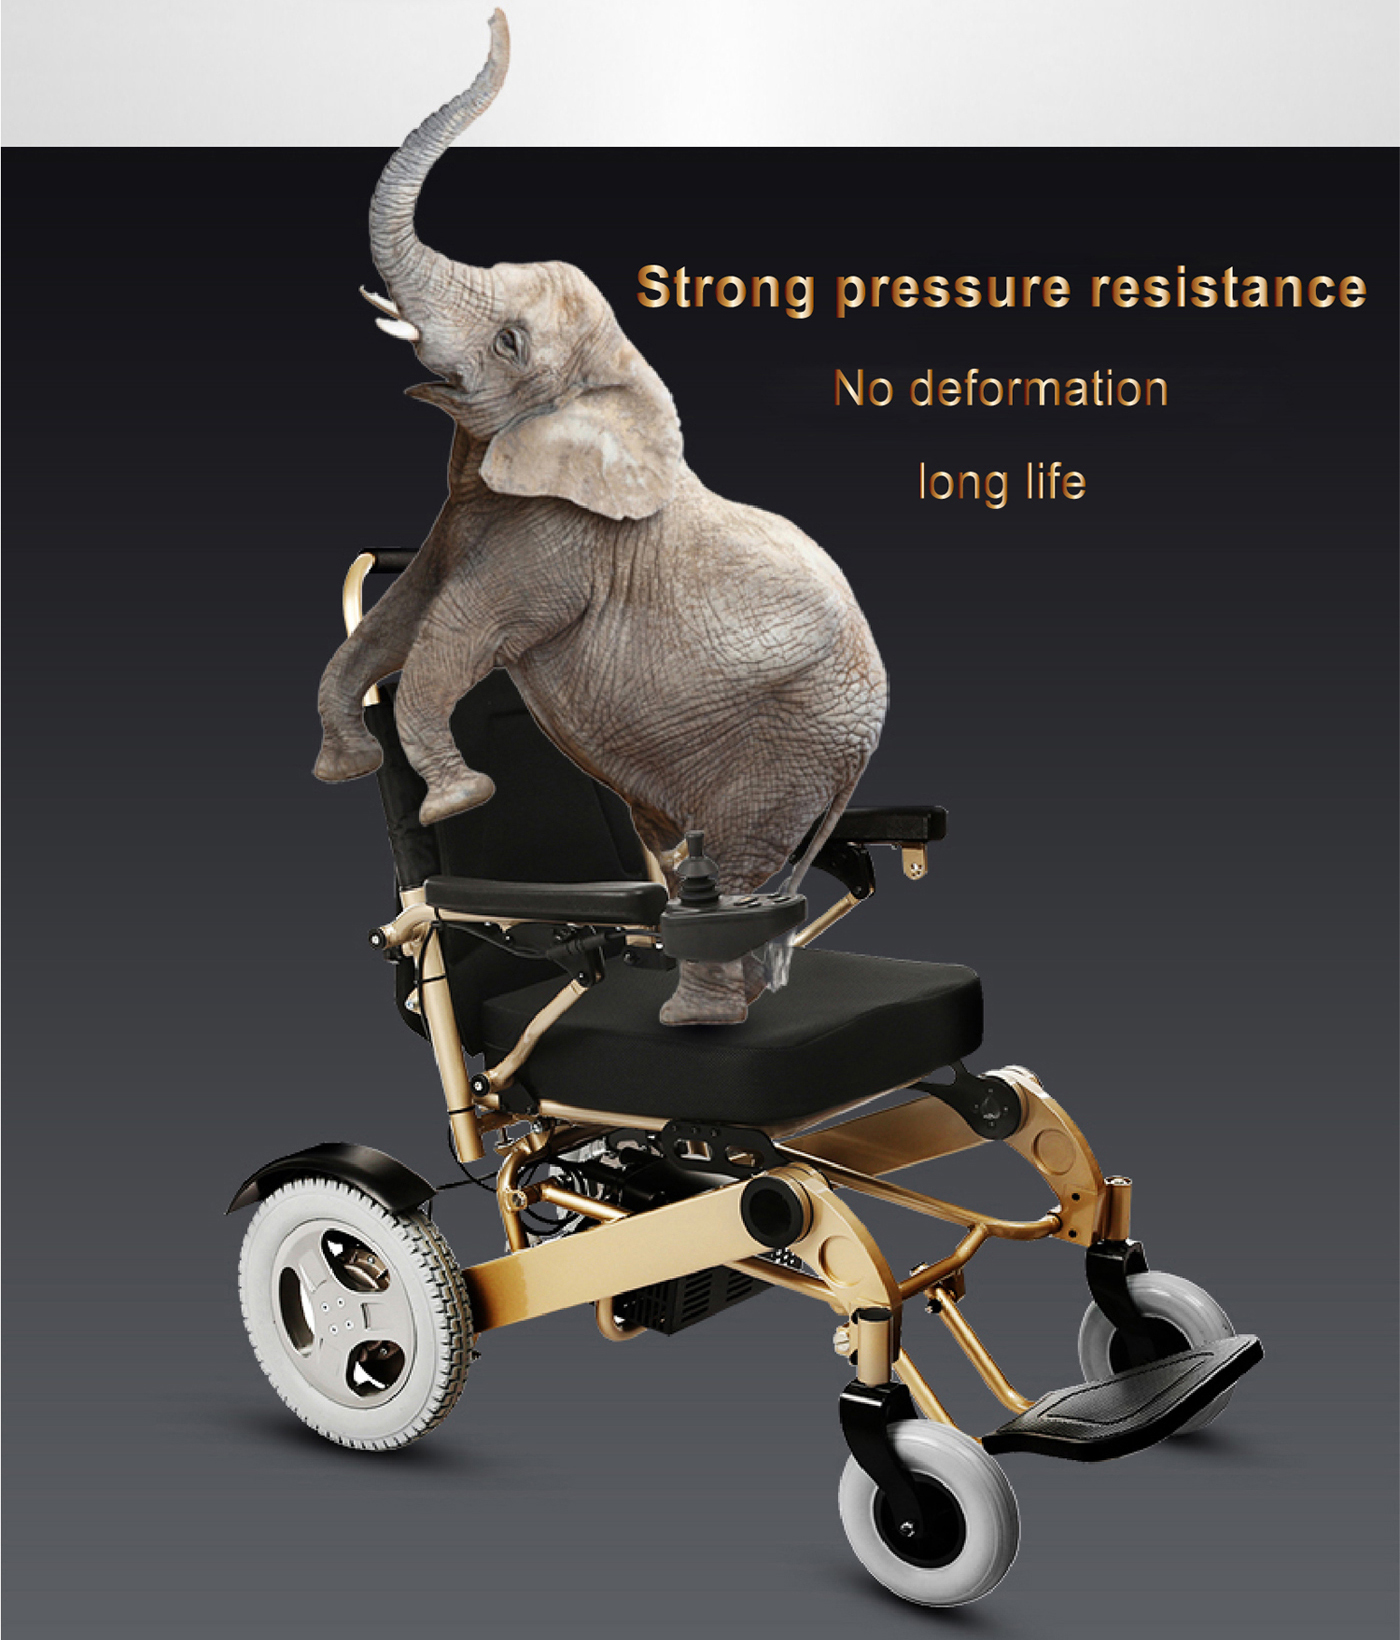 Pruebas de sillas de ruedas eléctricas (II) - Pruebas de rendimiento de frenado